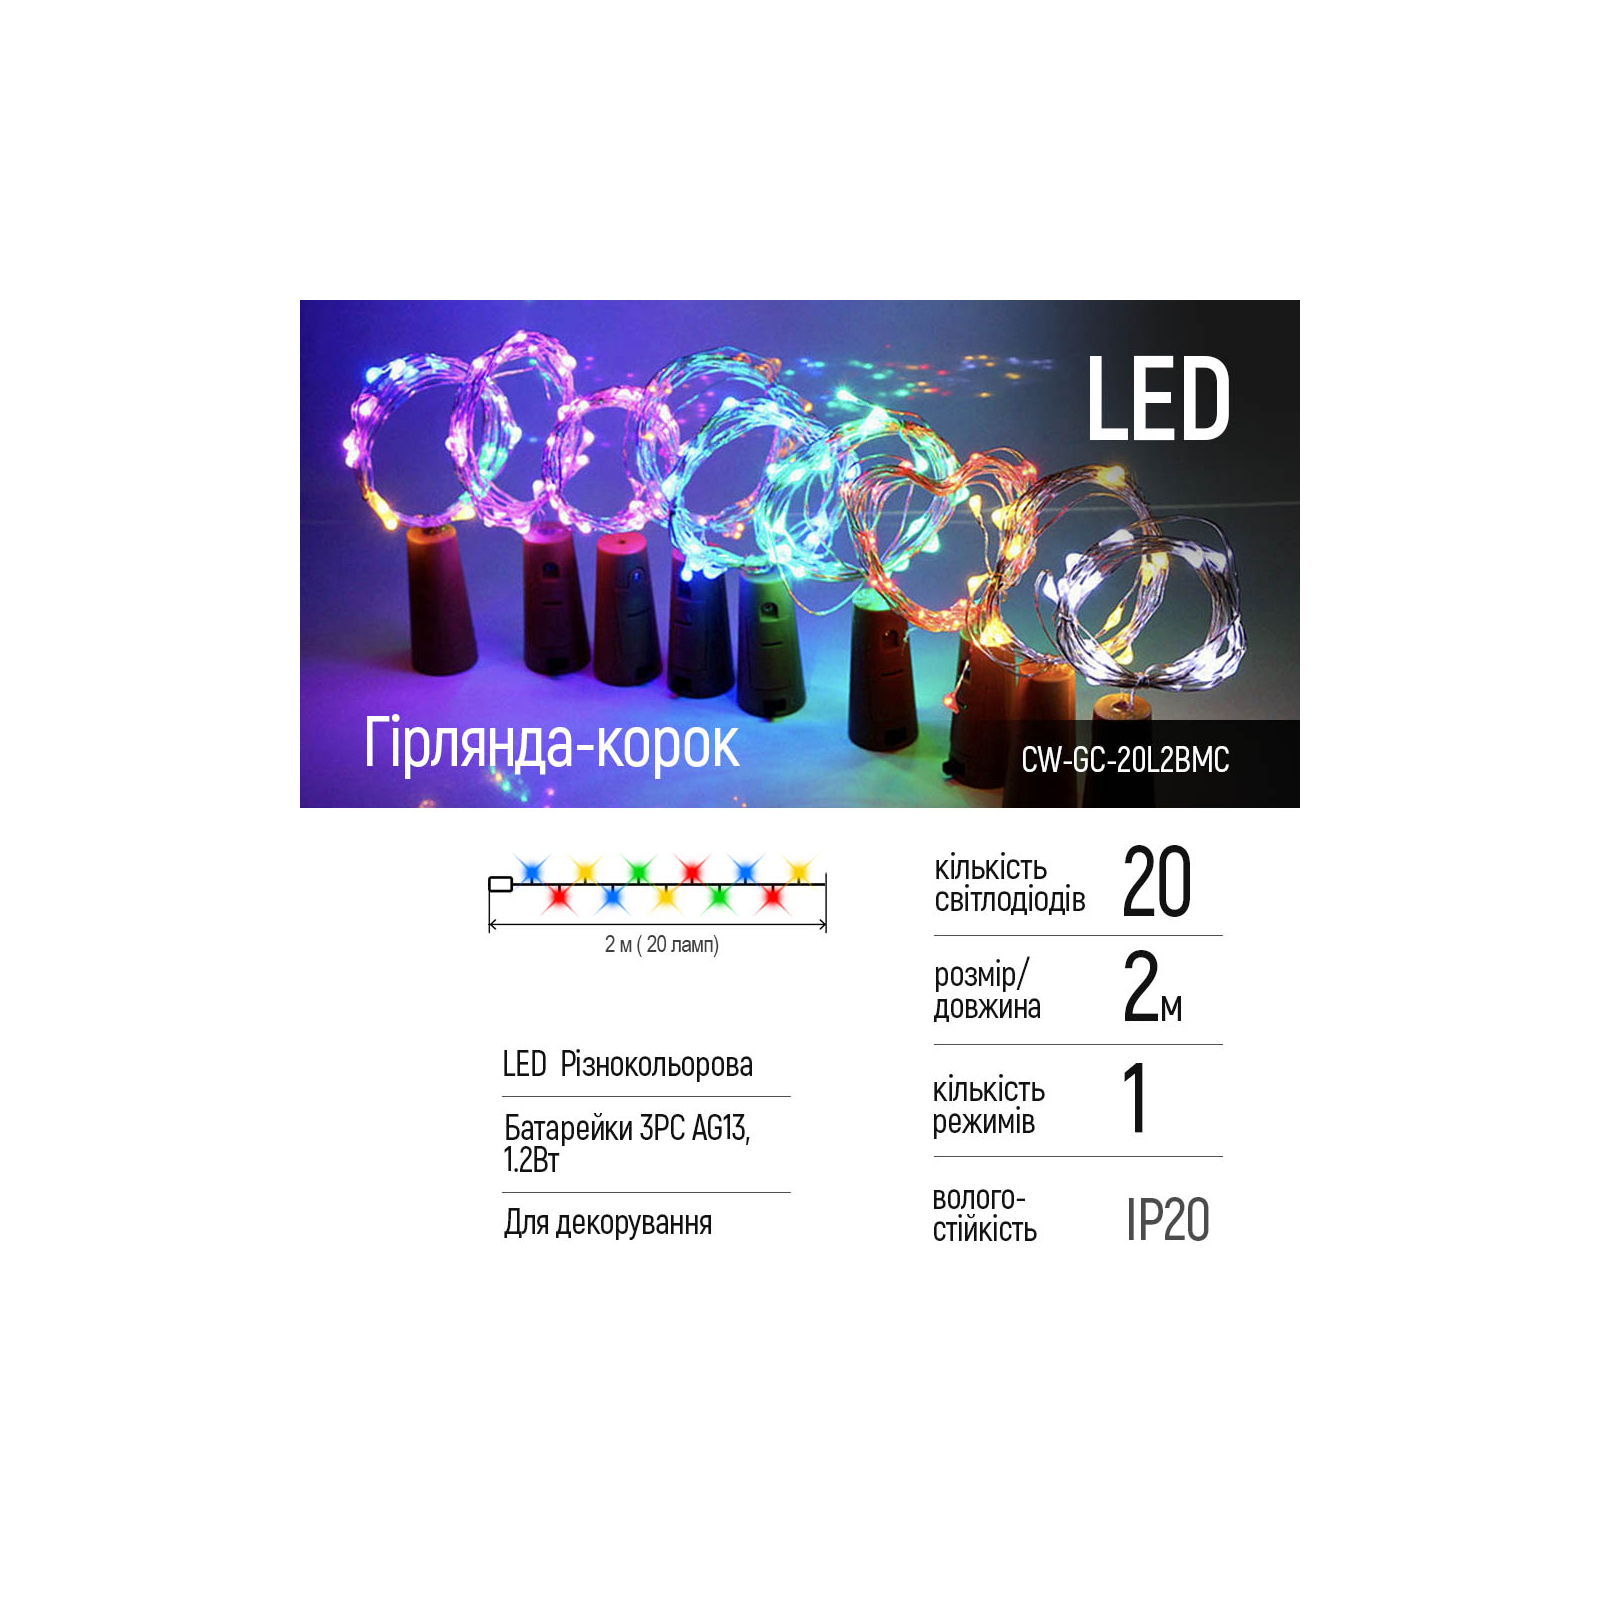 Гирлянда ColorWay пробка для бутылки на батарейках LED 20/2М (5шт/уп) цветная (CW-GC-20L2BMC) изображение 2